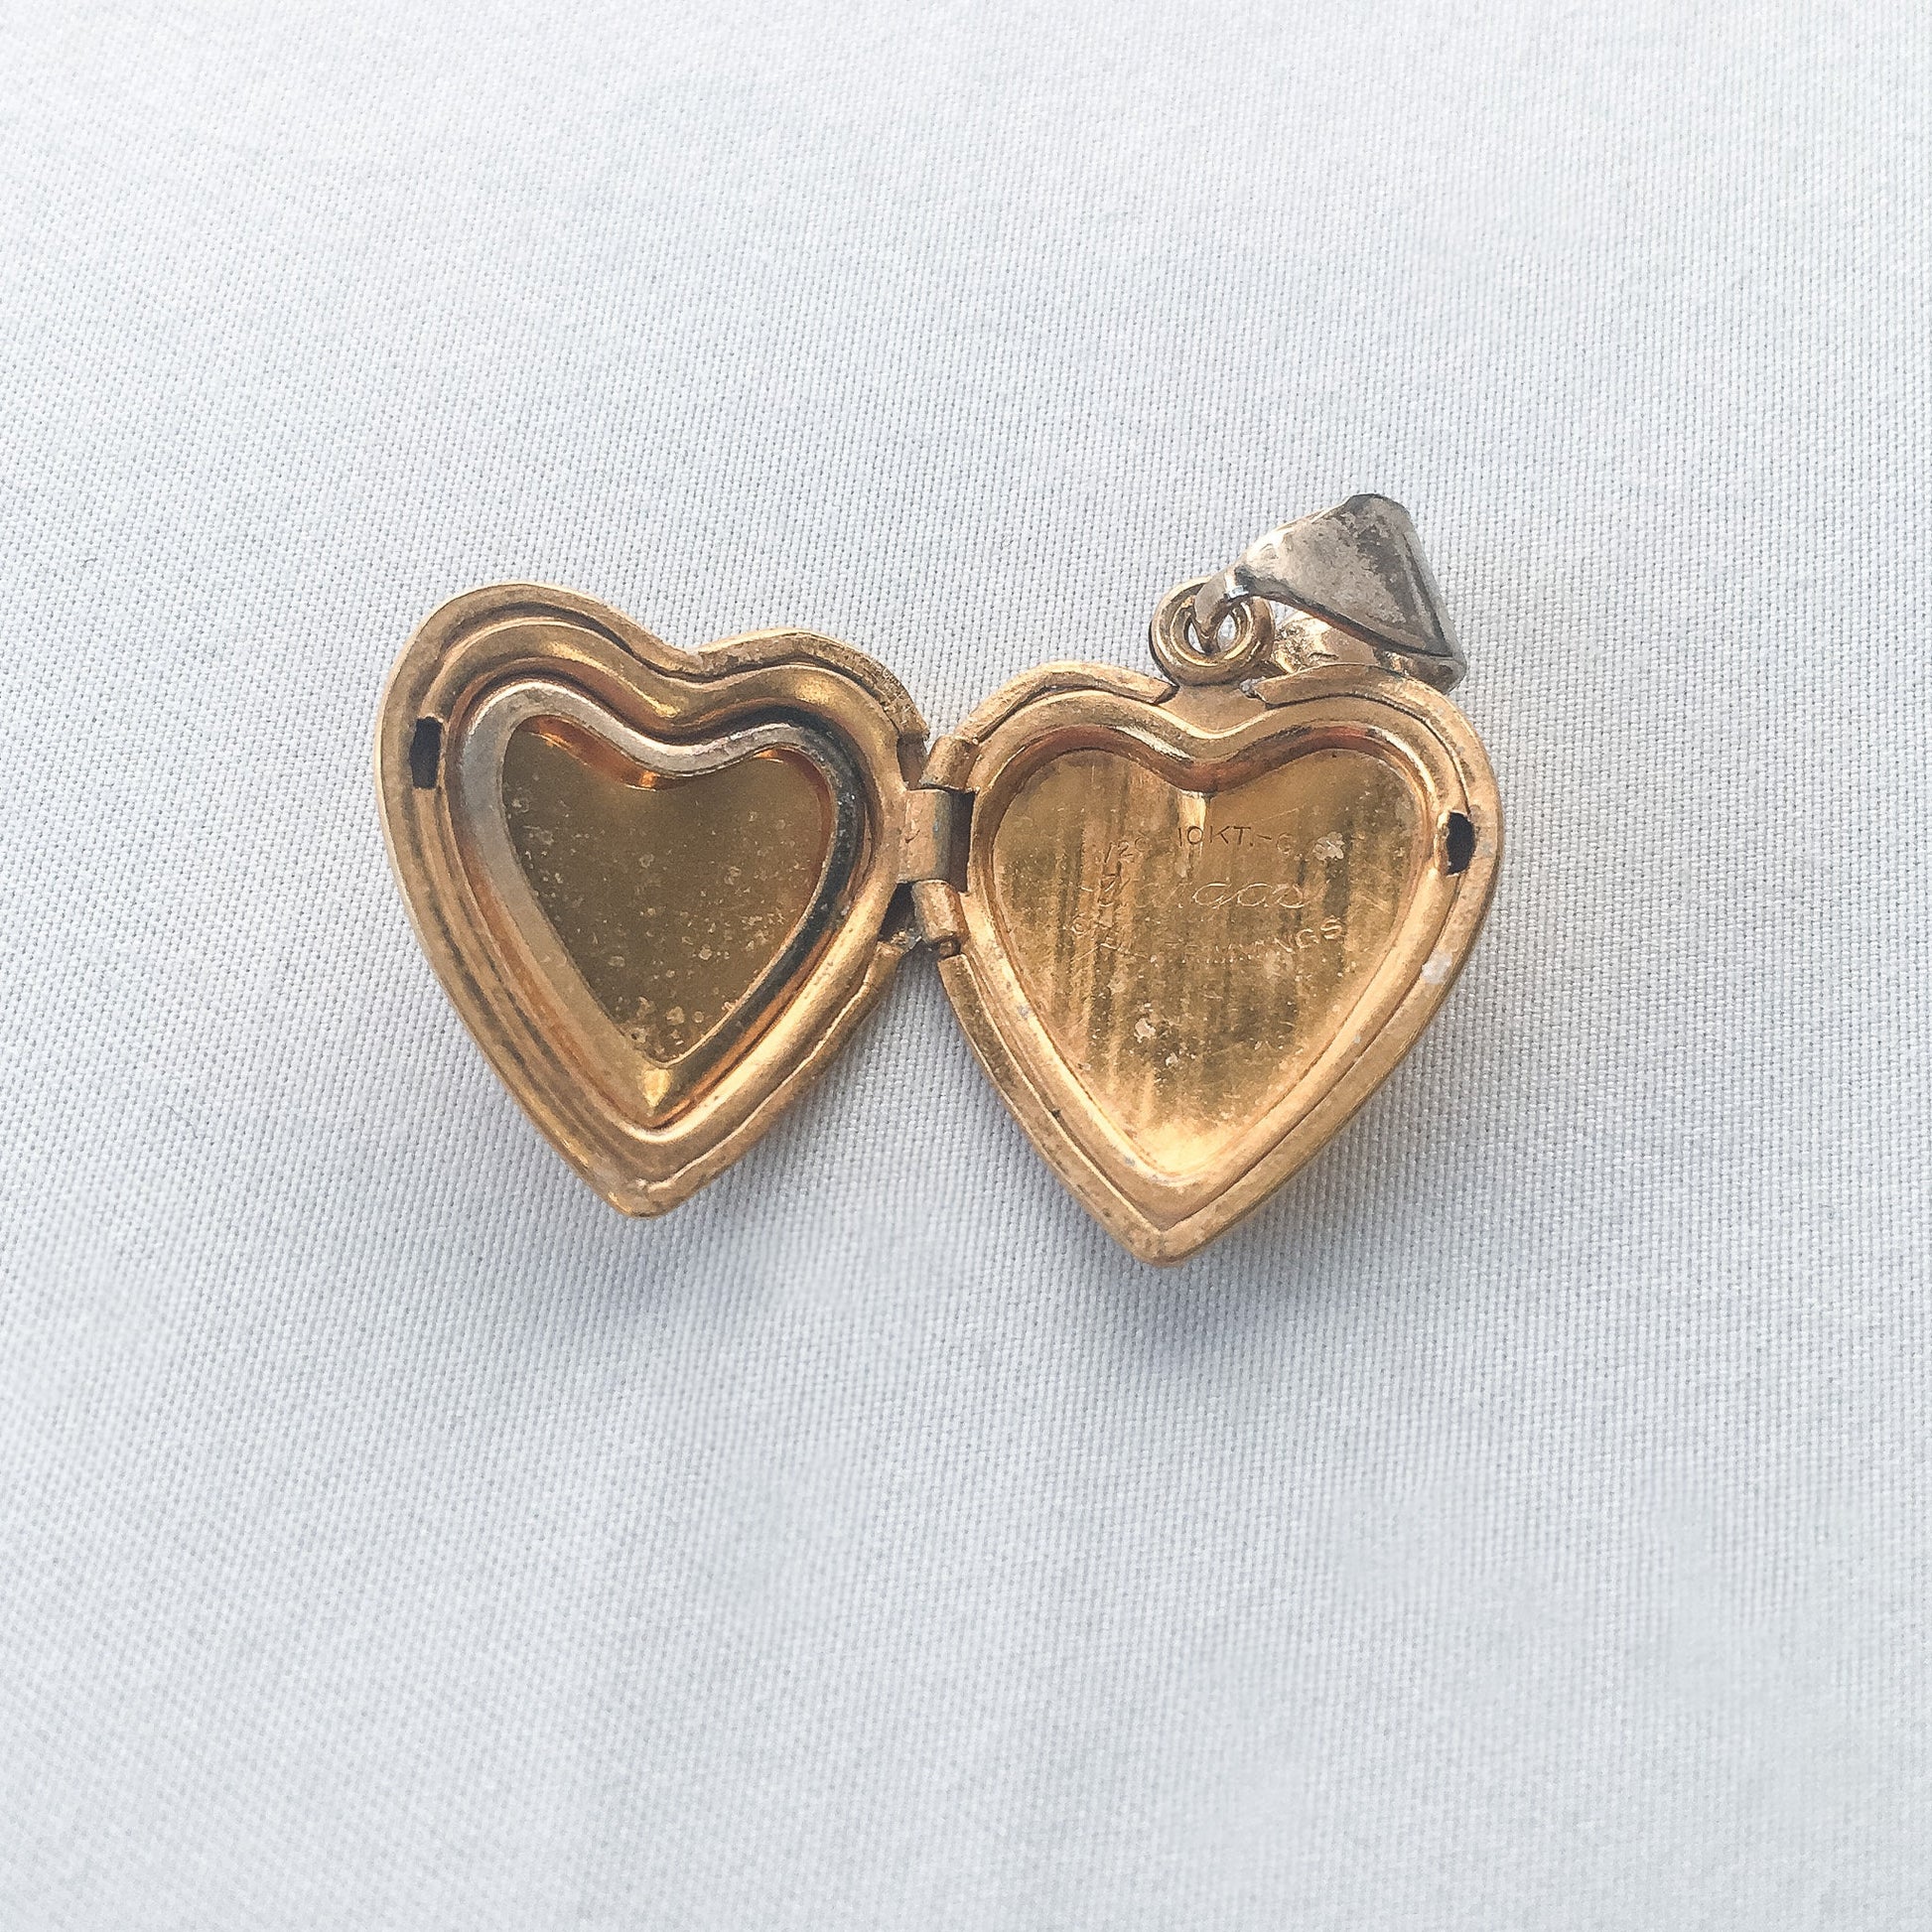 Vintage Vargas 10k Gold Filled Heart Shaped Locket with Sterling Trimming, Art Deco Locket, Locket Only